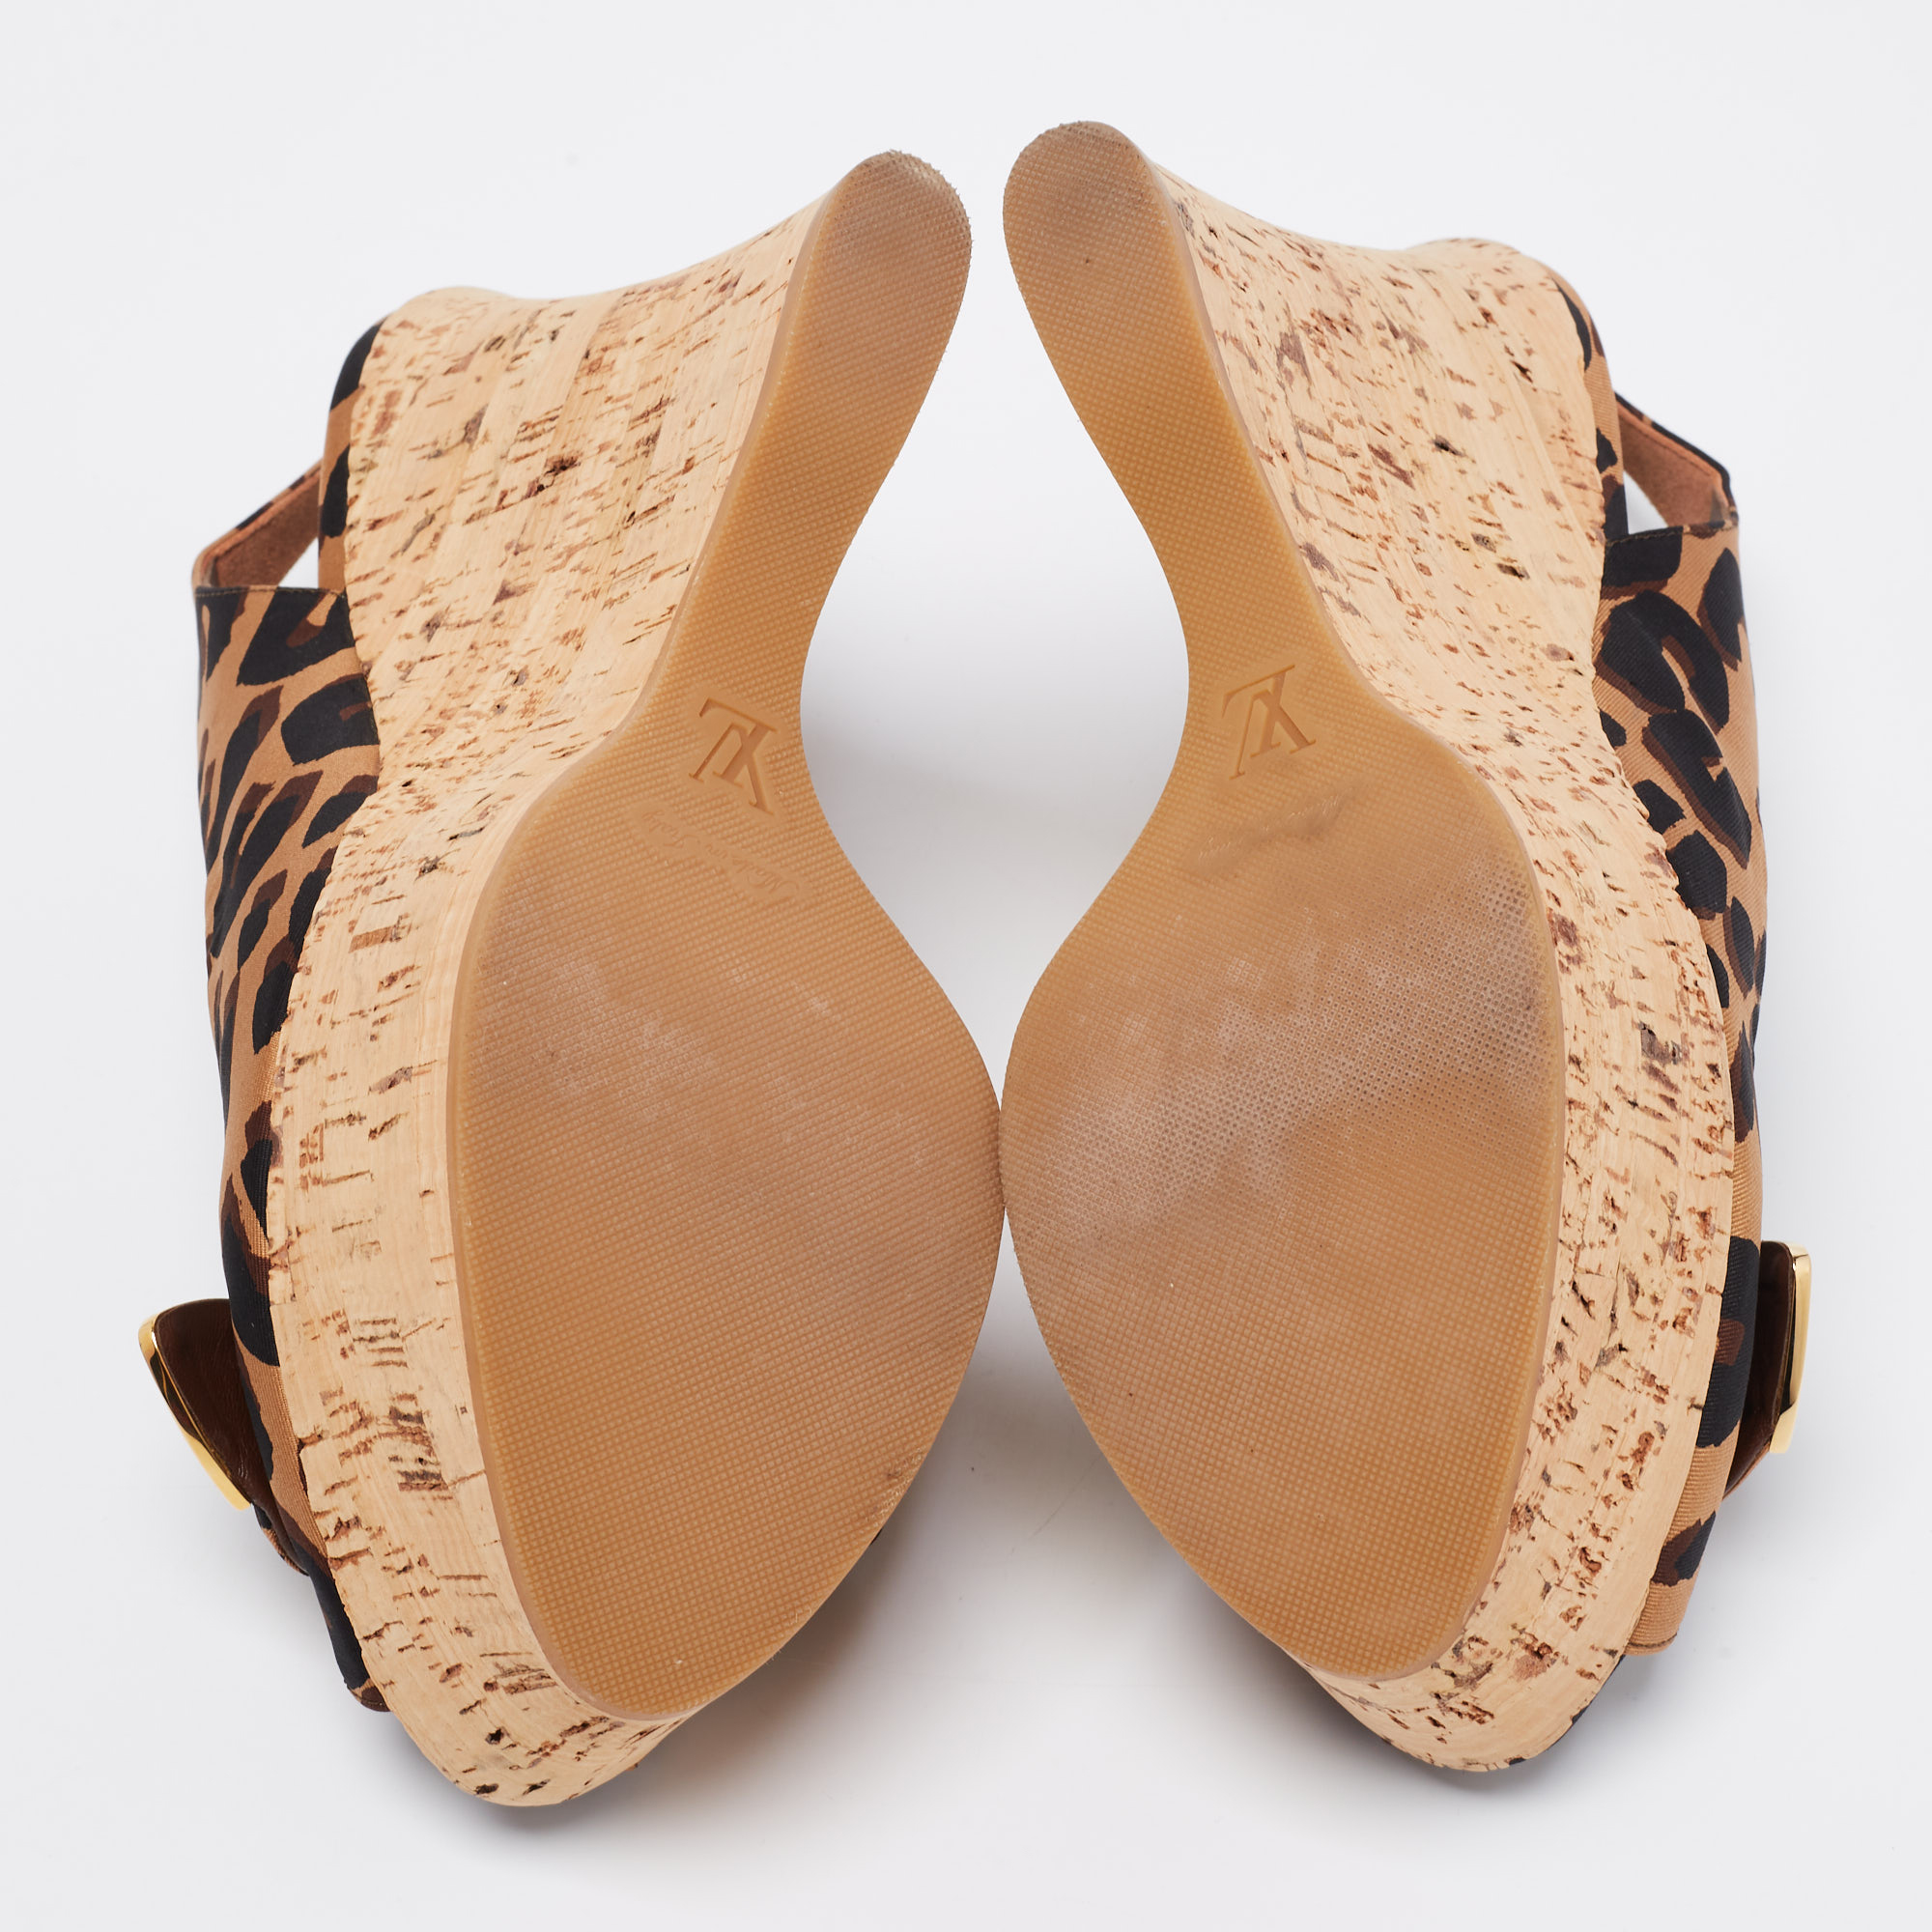 Louis Vuitton Tri-Color Leopard Print Canvas Bow Platform Wedge Slingback Sandals Size 40